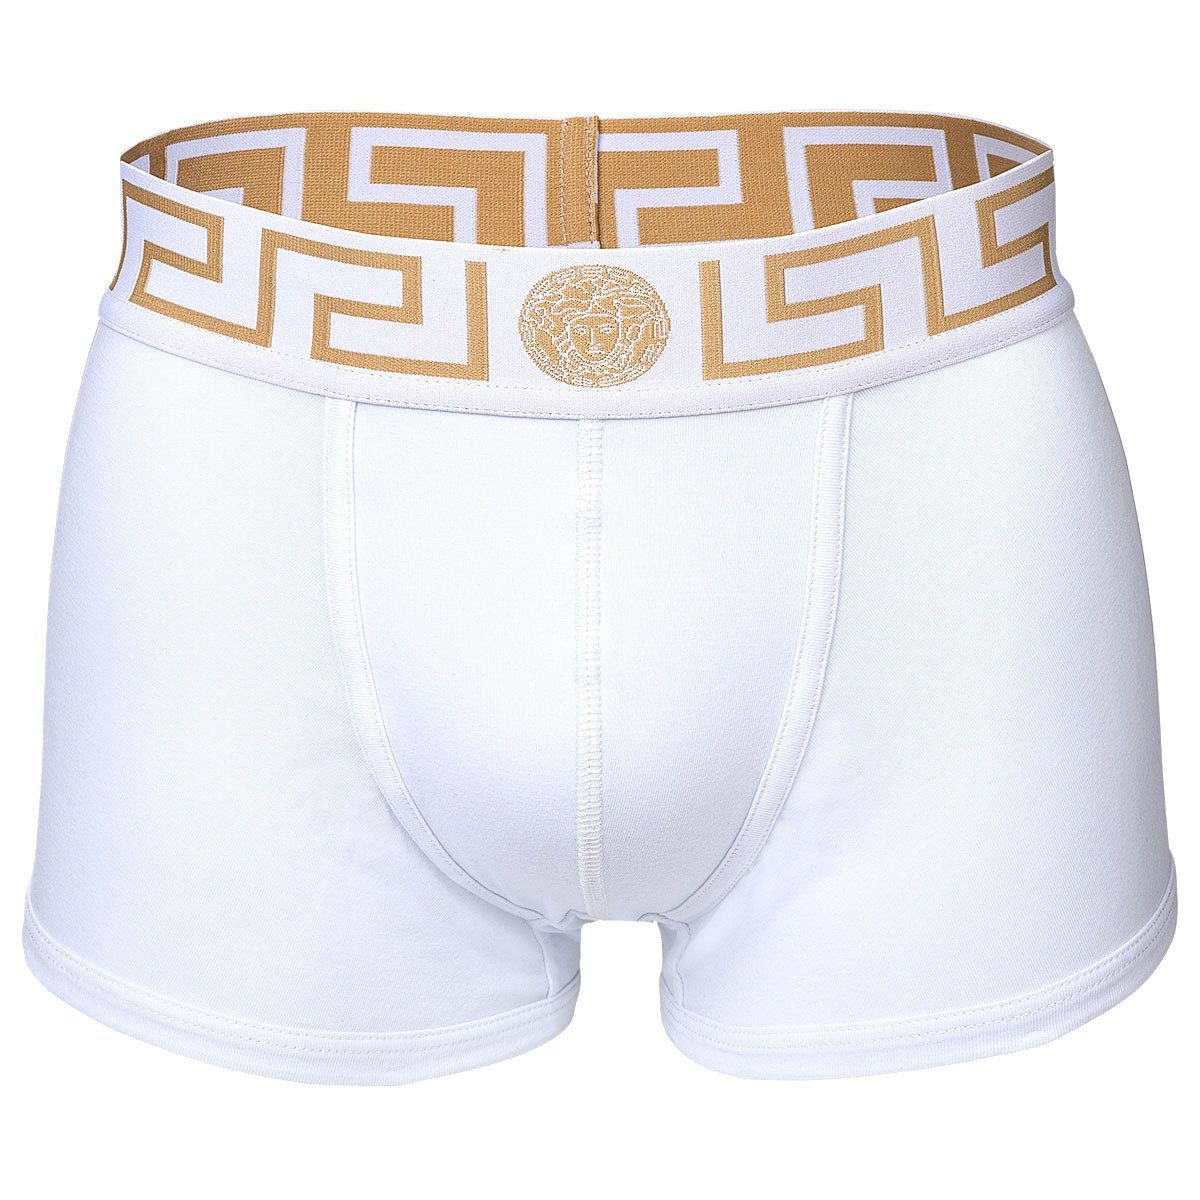 Versace - Trunk Shorts, Herren 2er Boxer Boxer Schwarz/Weiß/Gold Pack